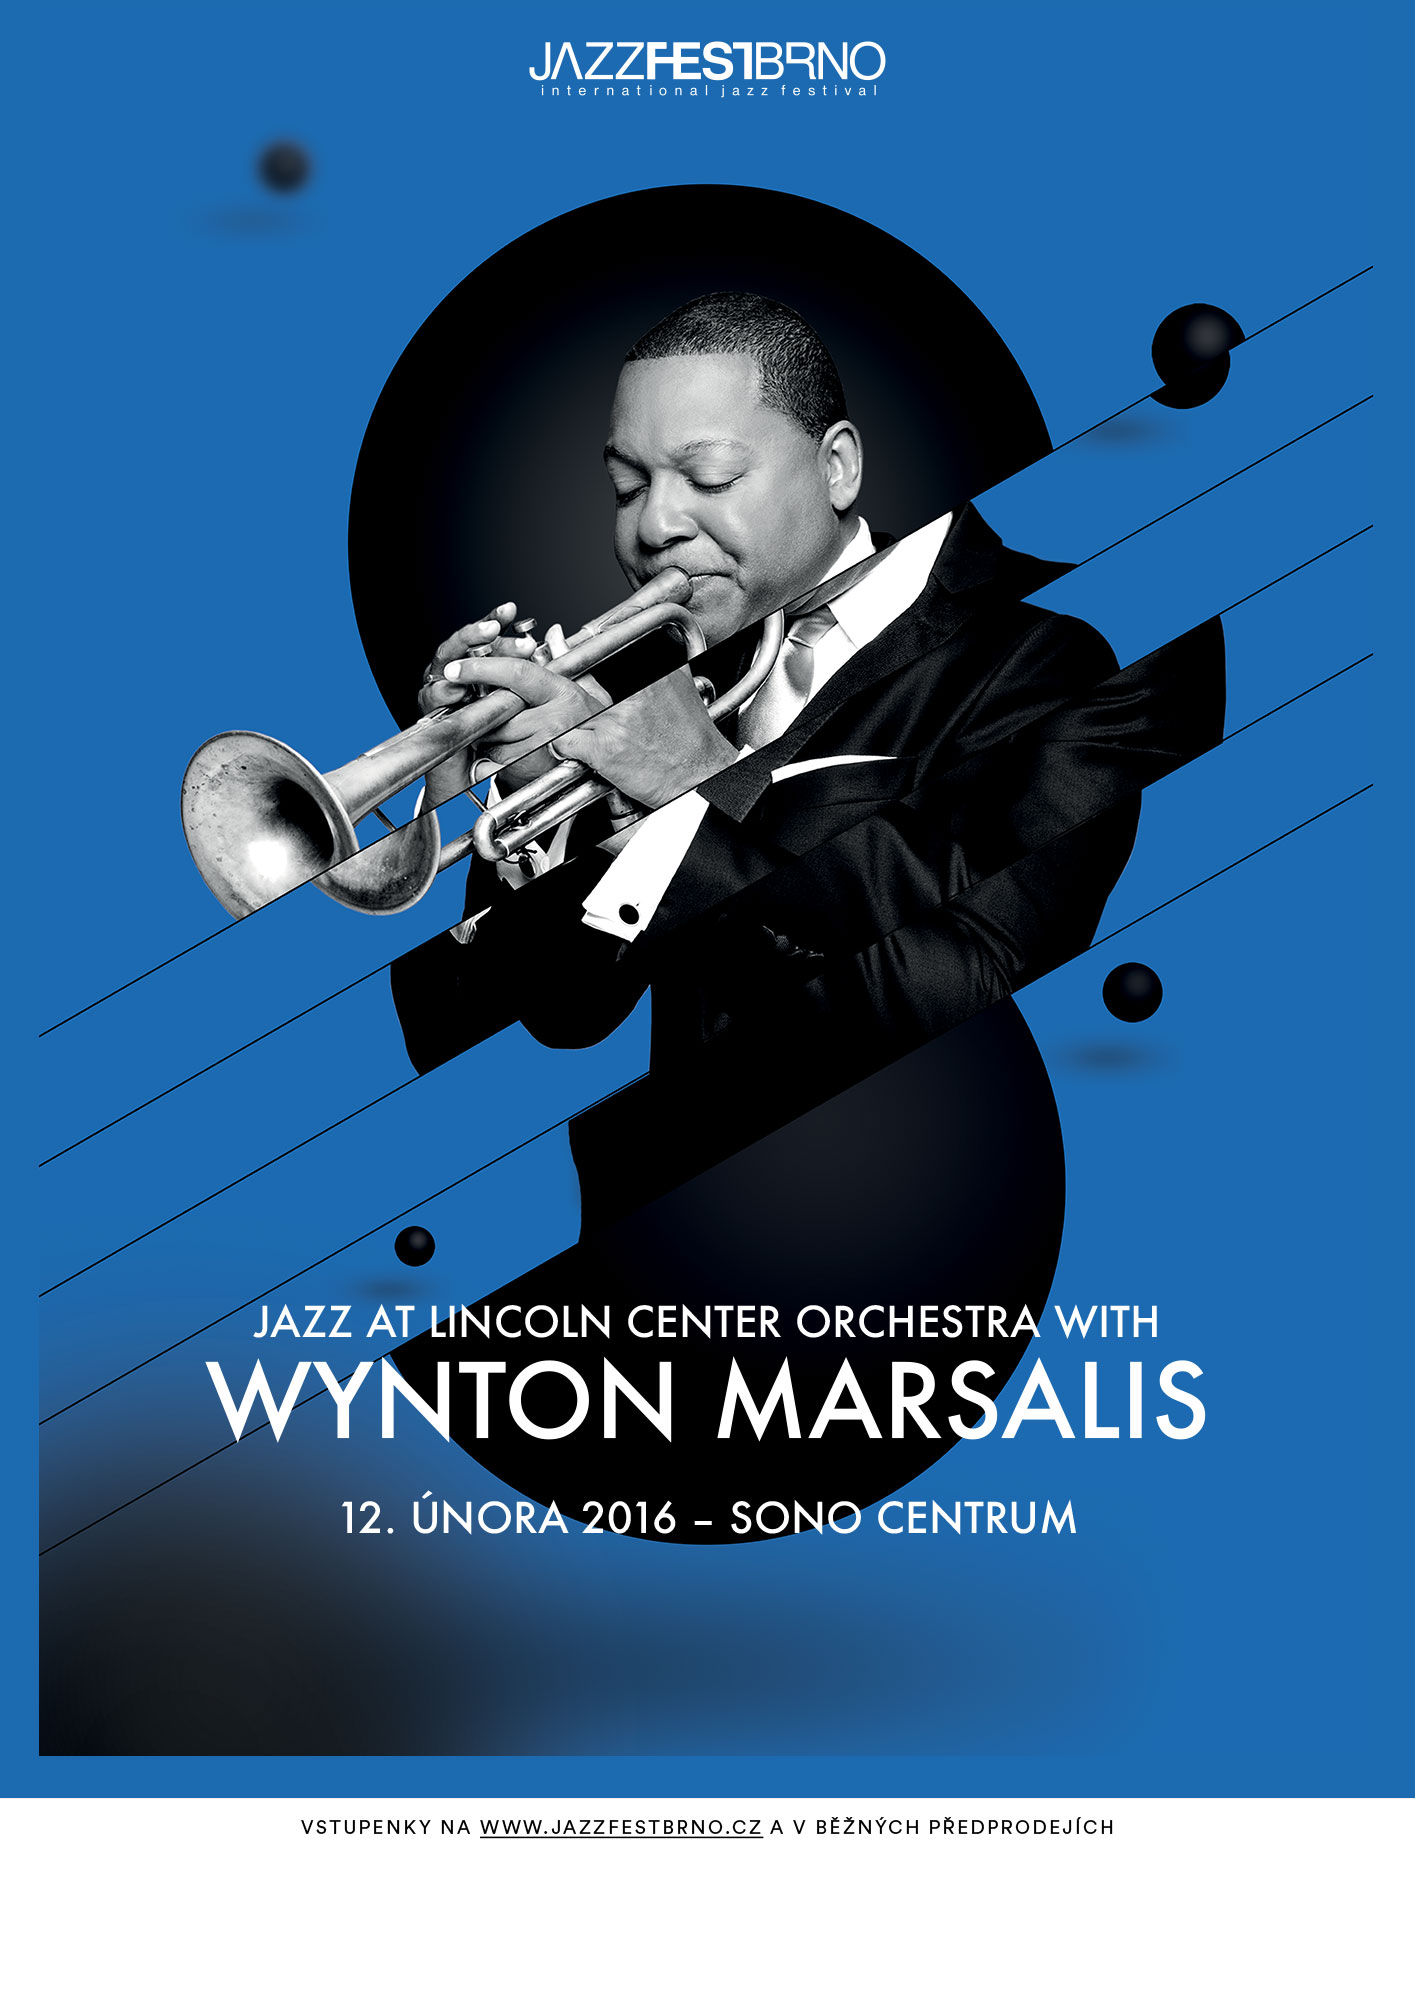 Jazzfestbrno 2016 - Wynton Marsalis